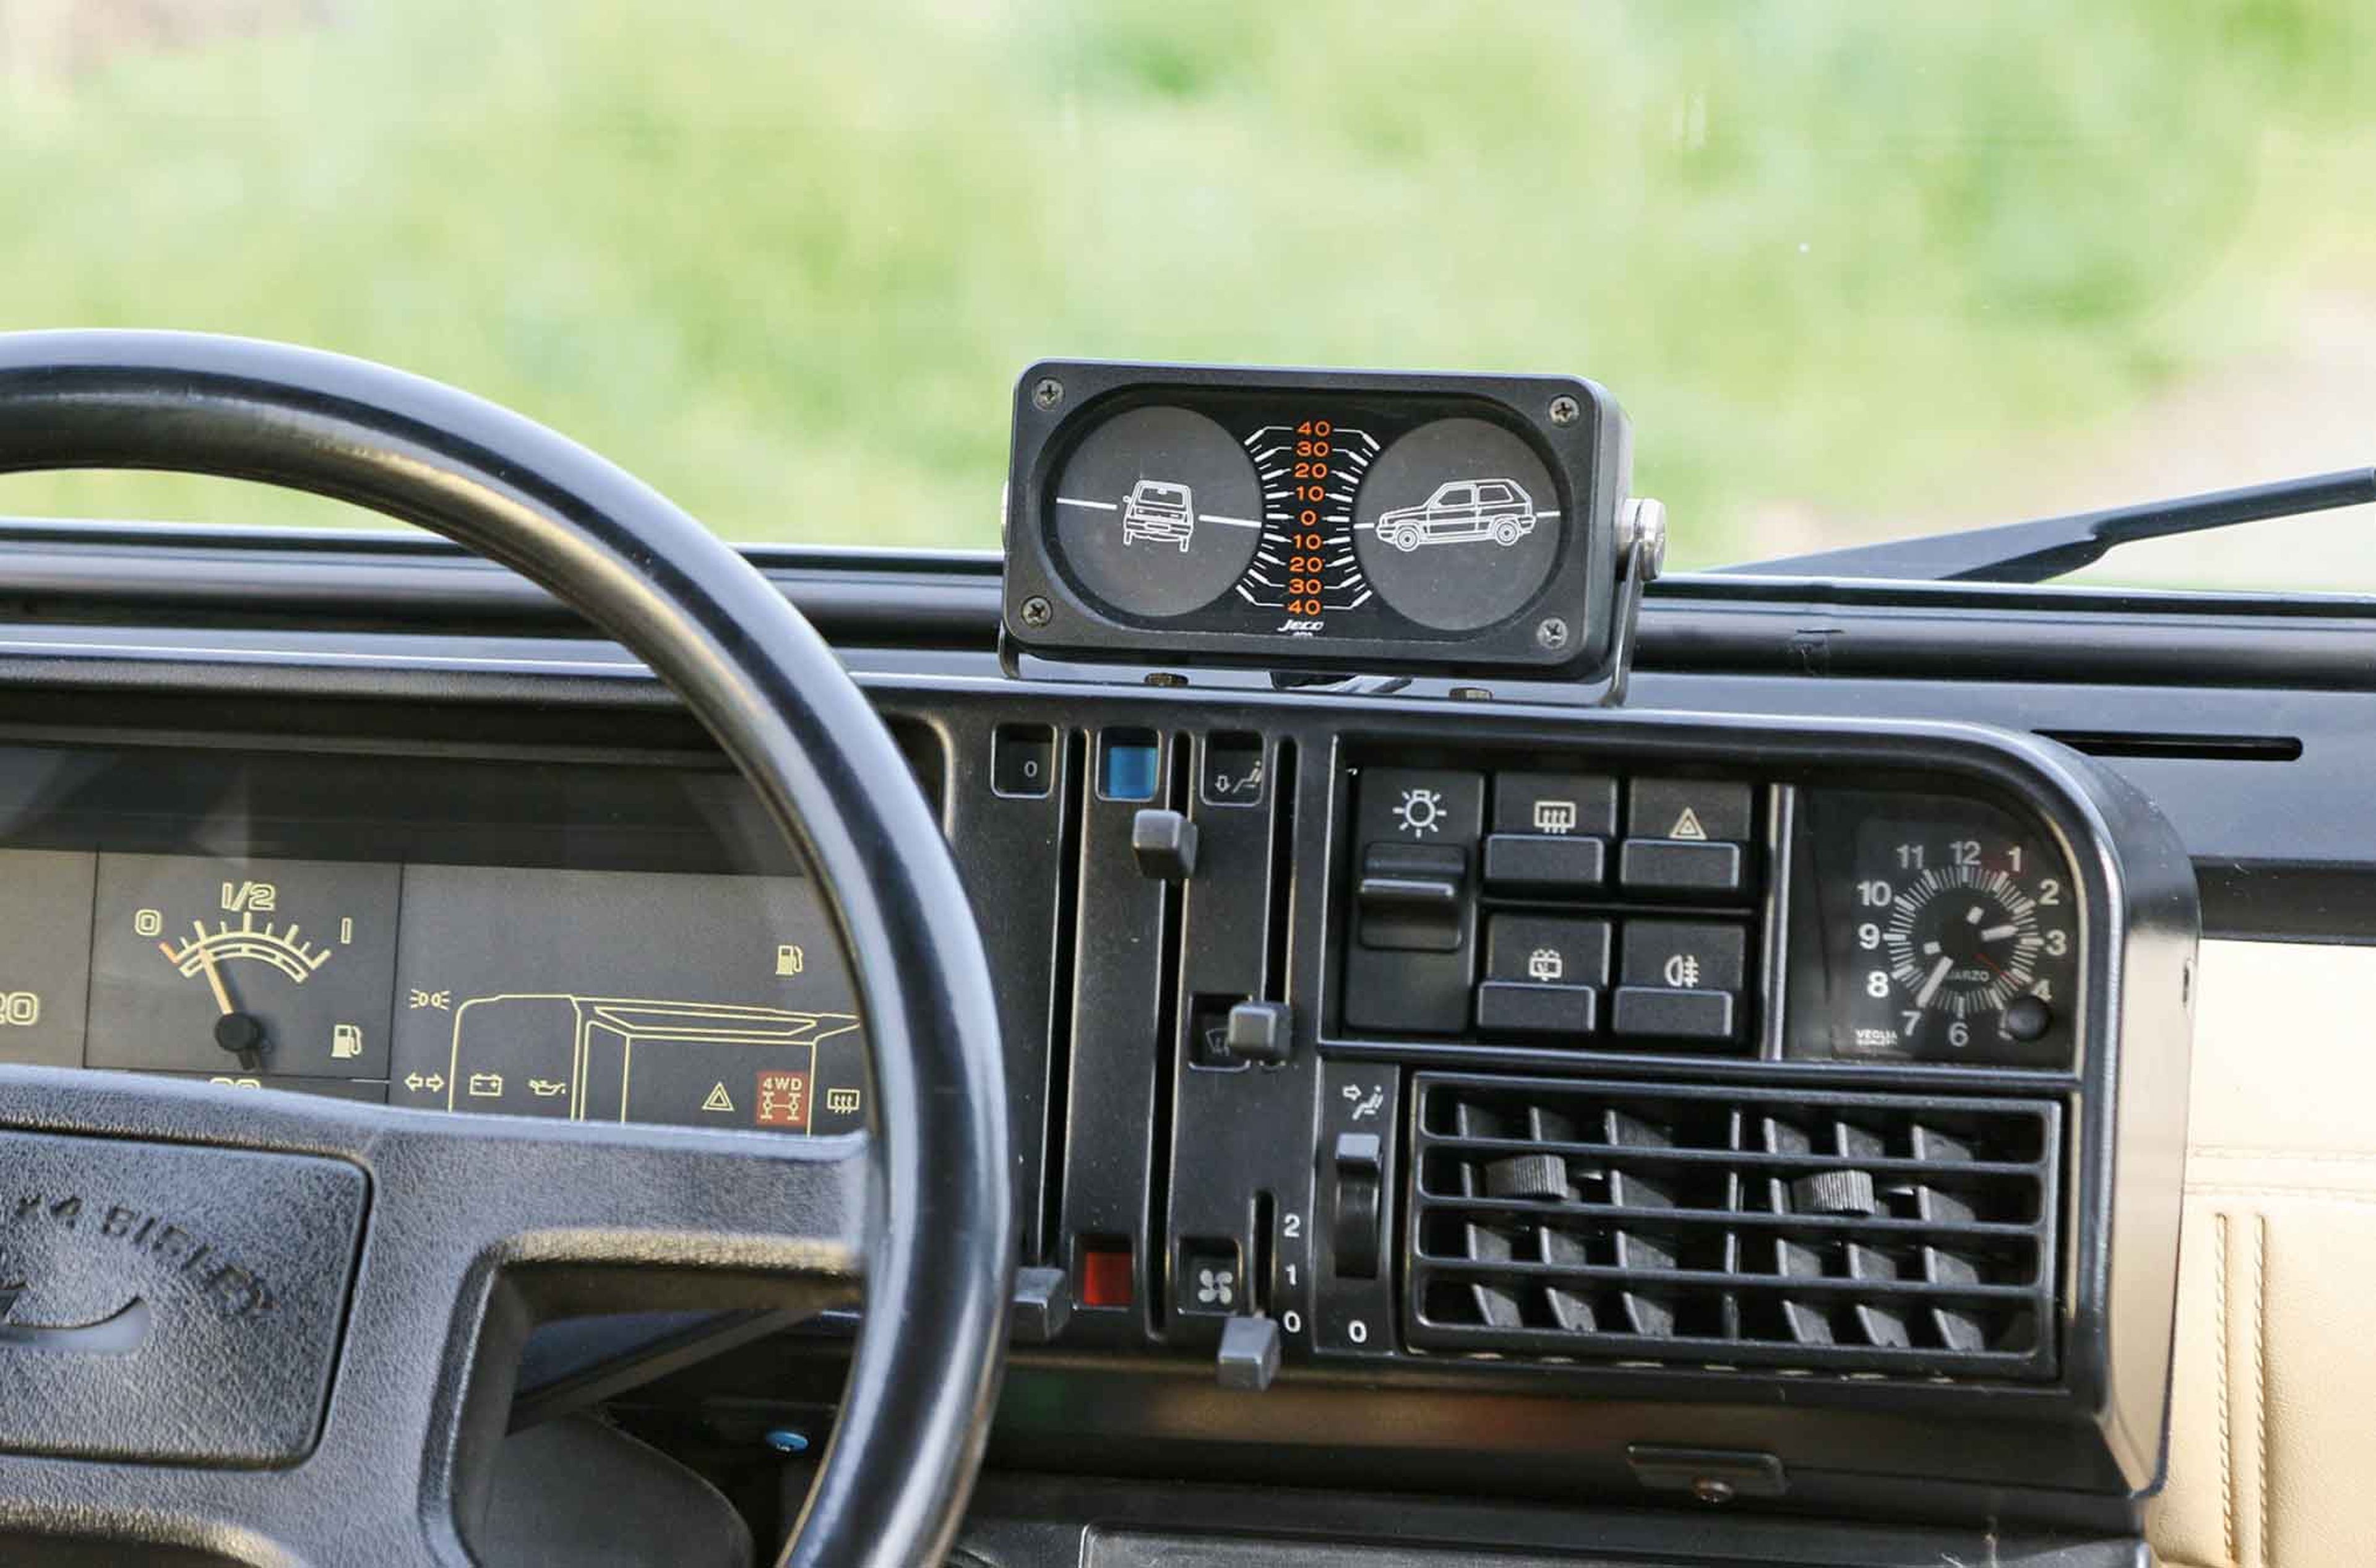 Prueba del Fiat Panda 4x4 cockpit